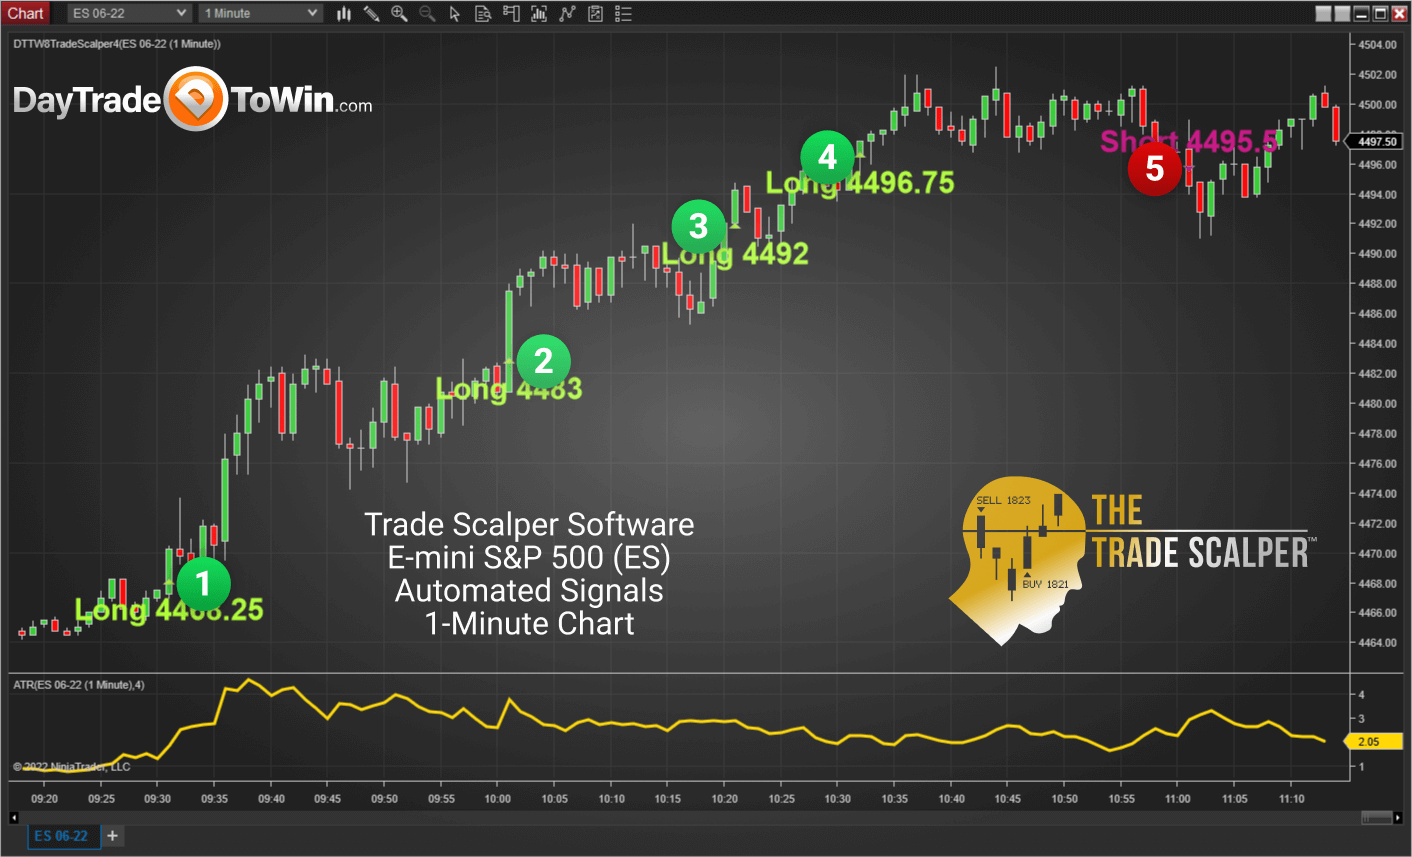 Trade Scalper Chart: E-mini S&P 500